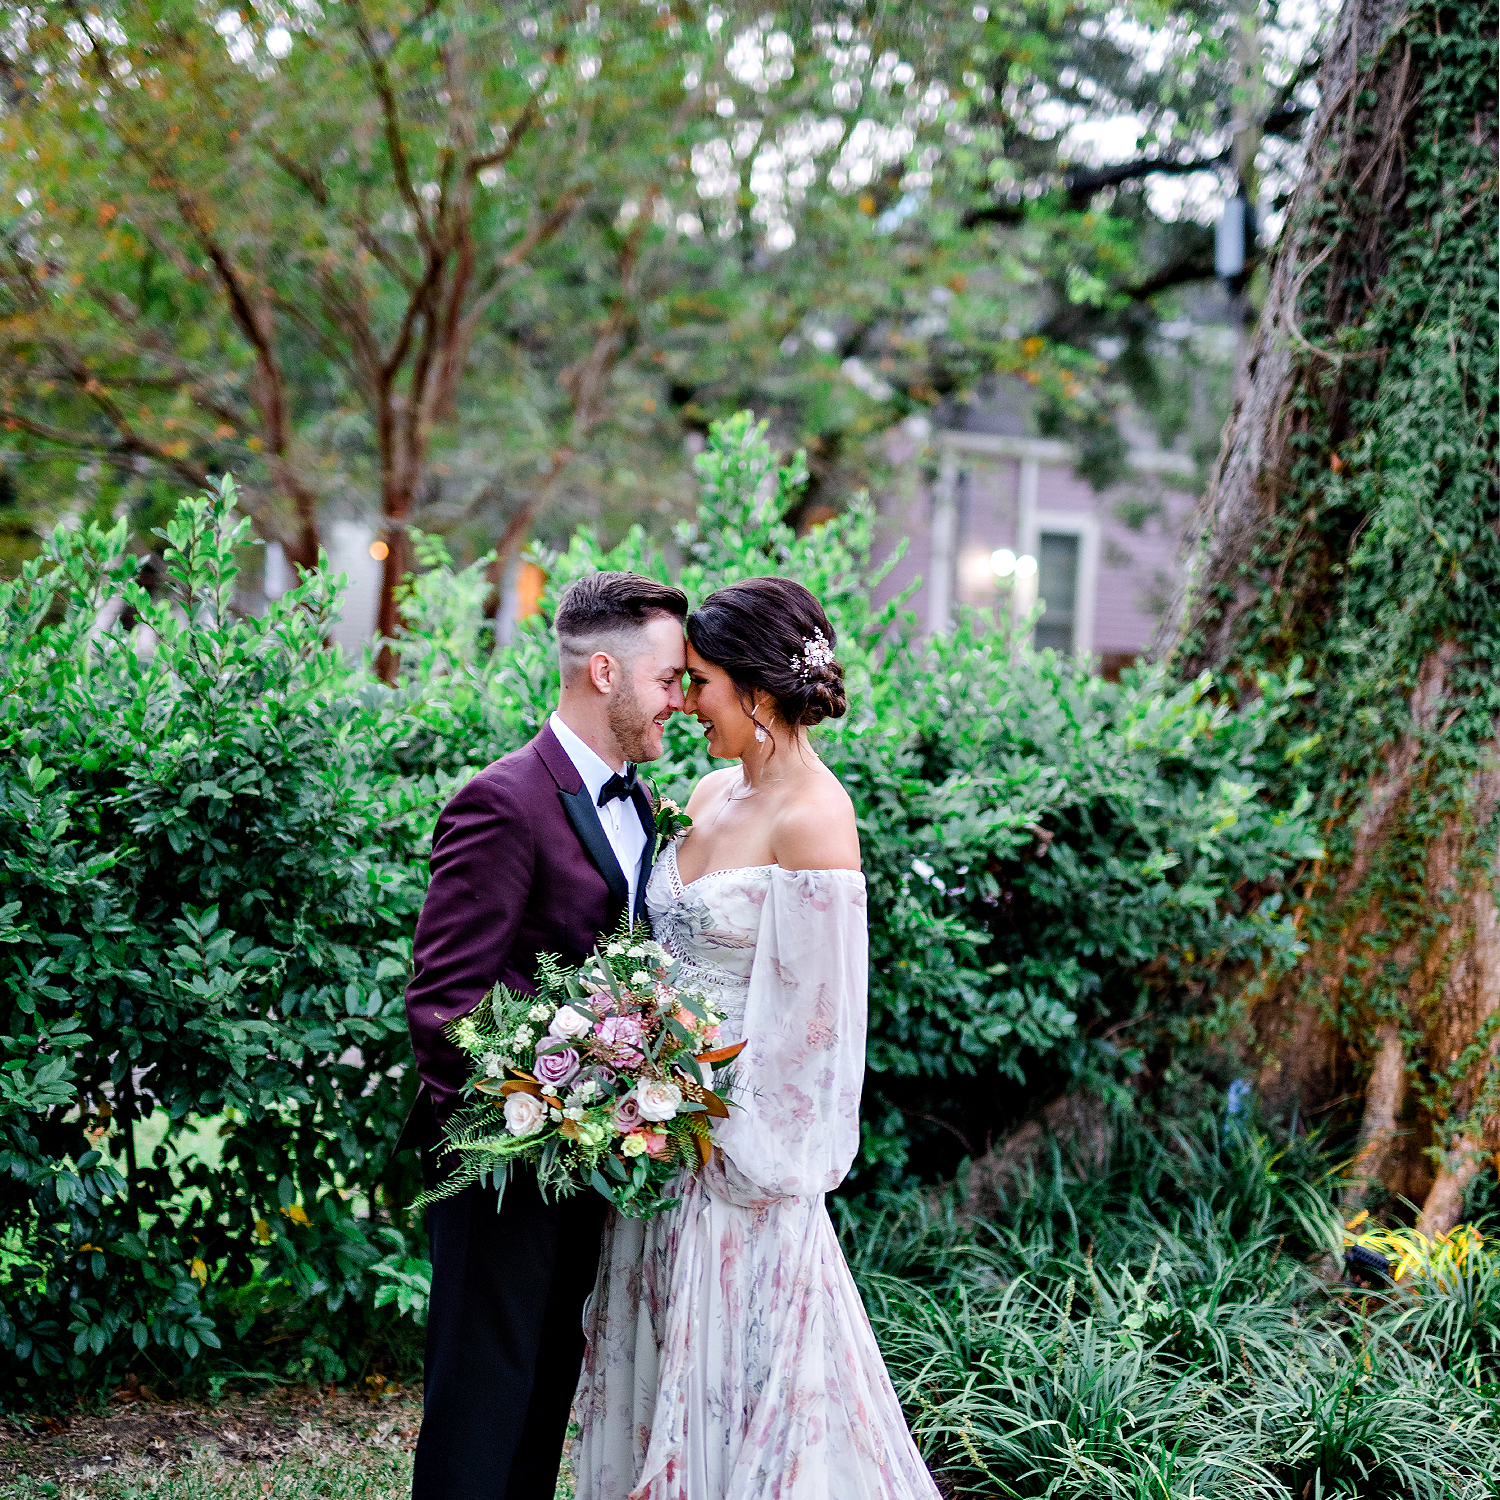 Intimate New Orleans Uptown Wedding | Josh & Alyssa